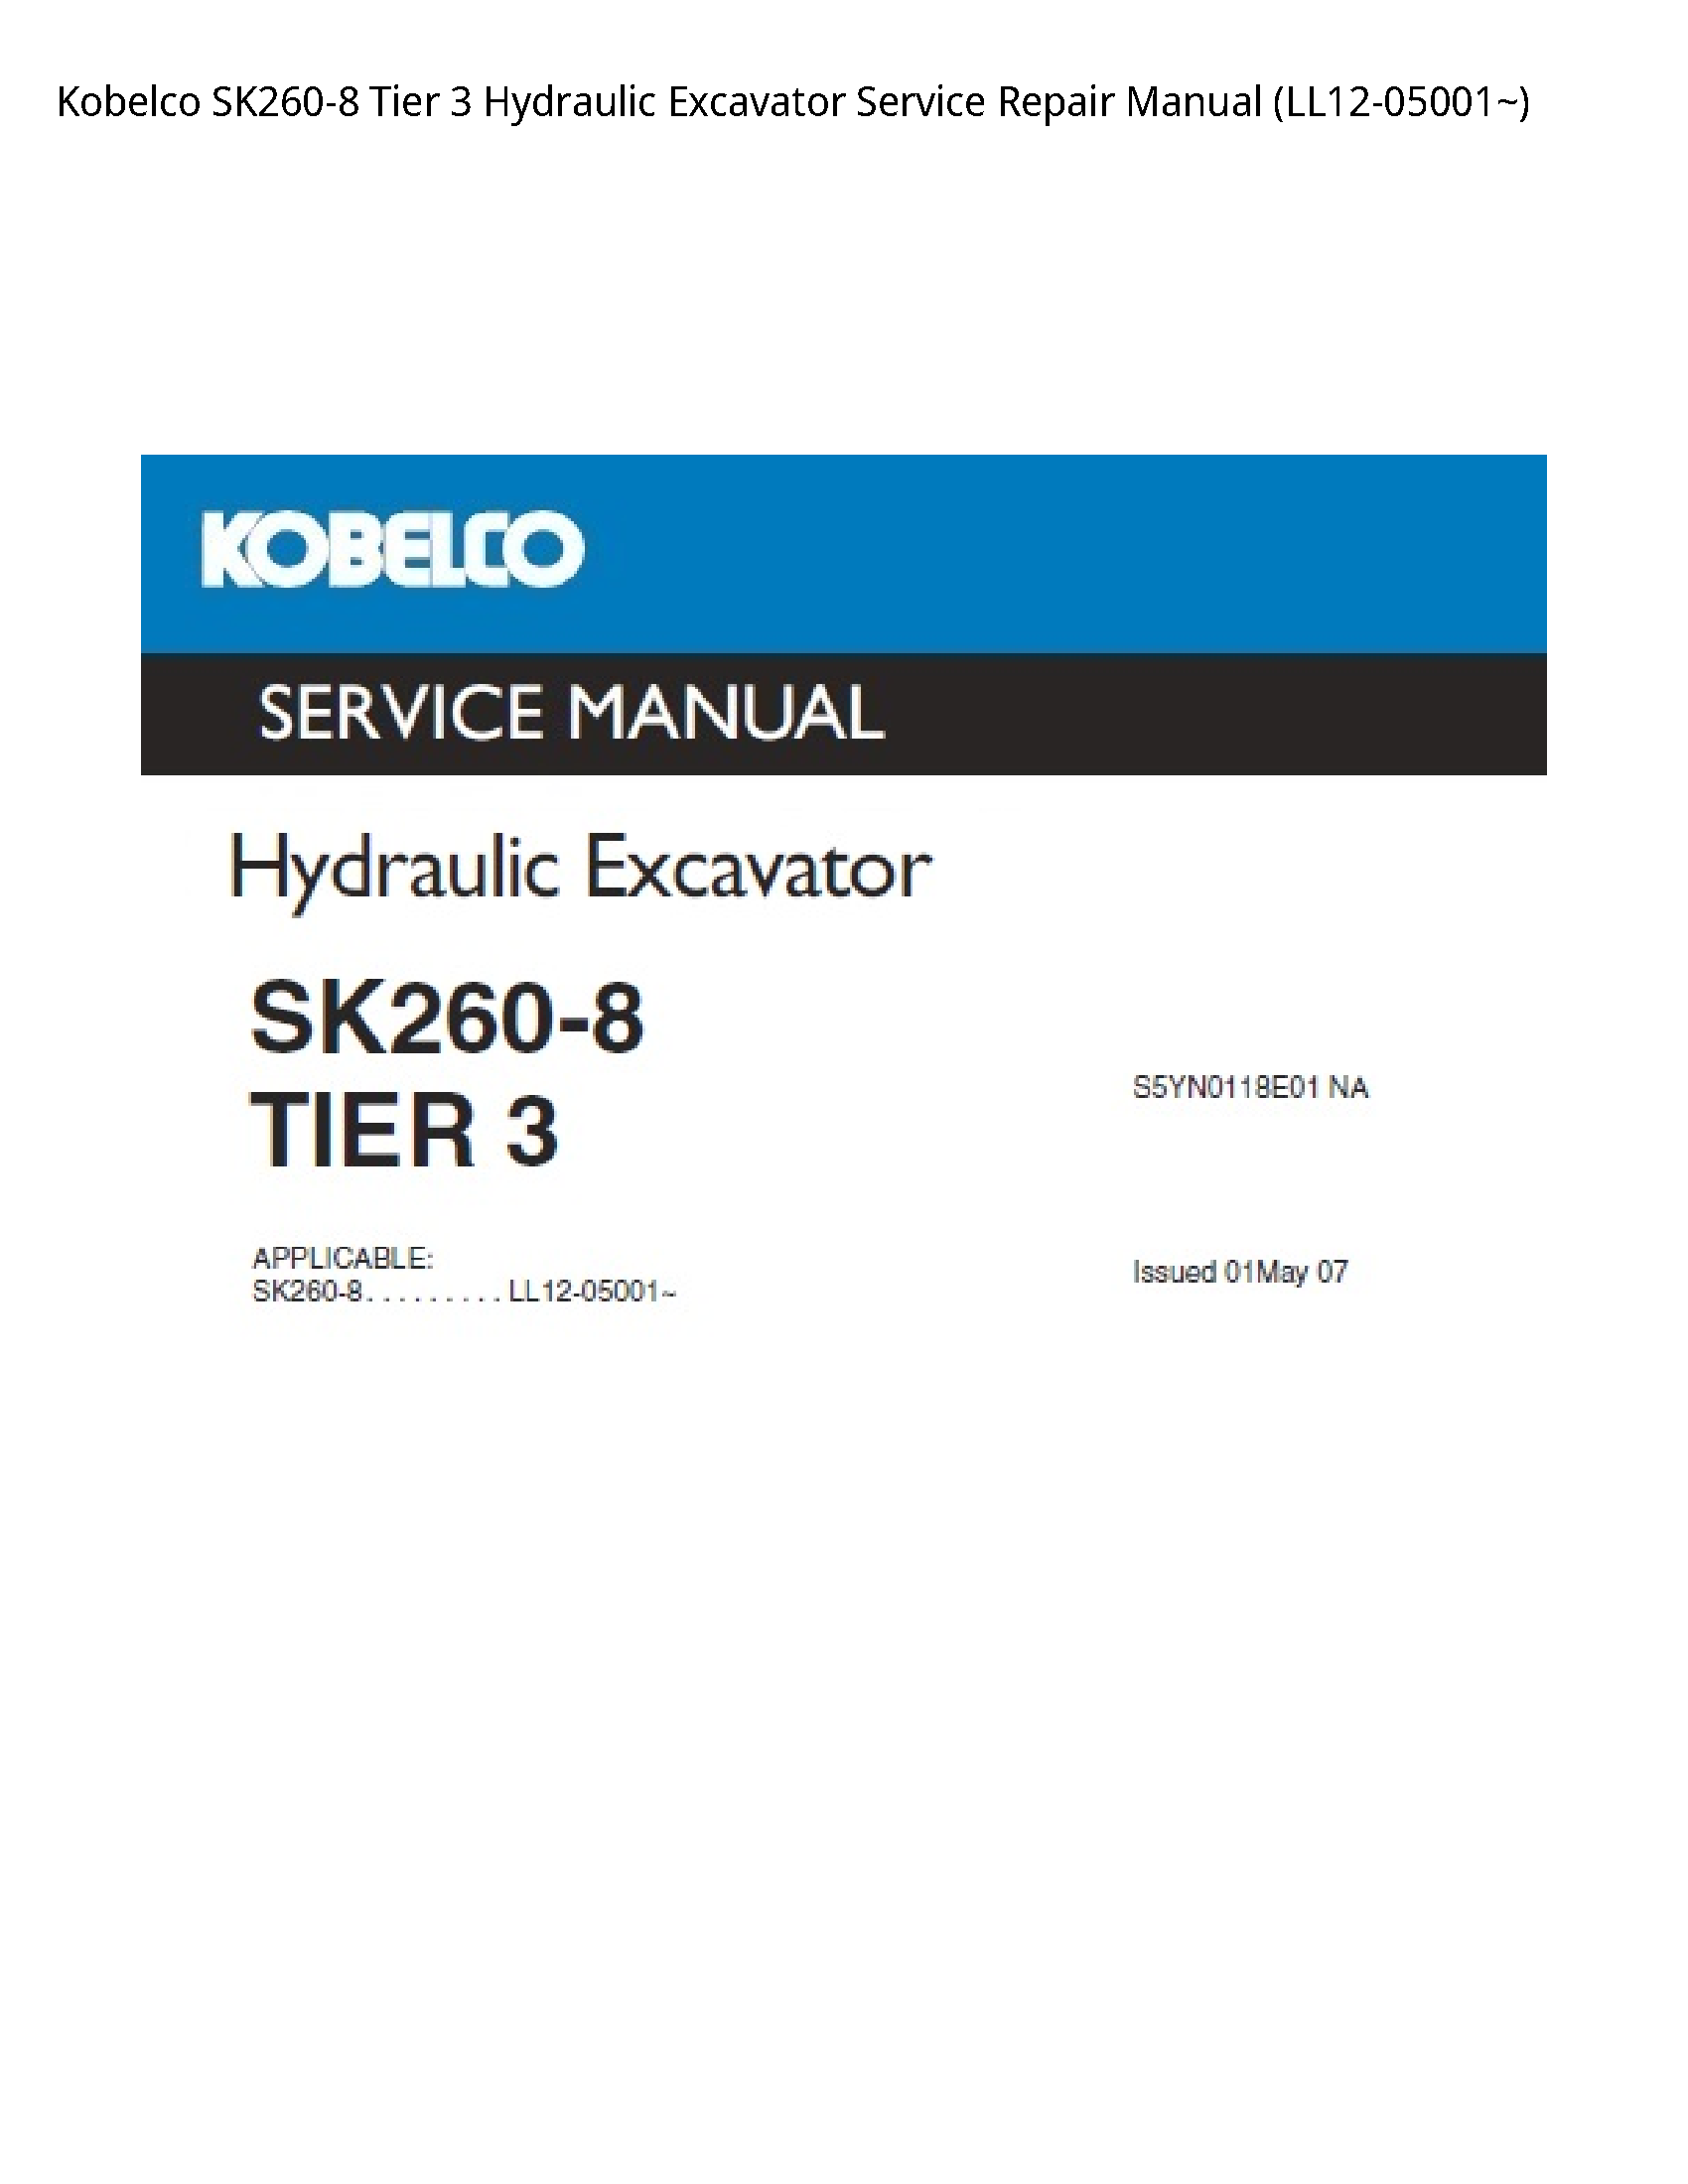 Kobelco SK260-8 Tier Hydraulic Excavator manual